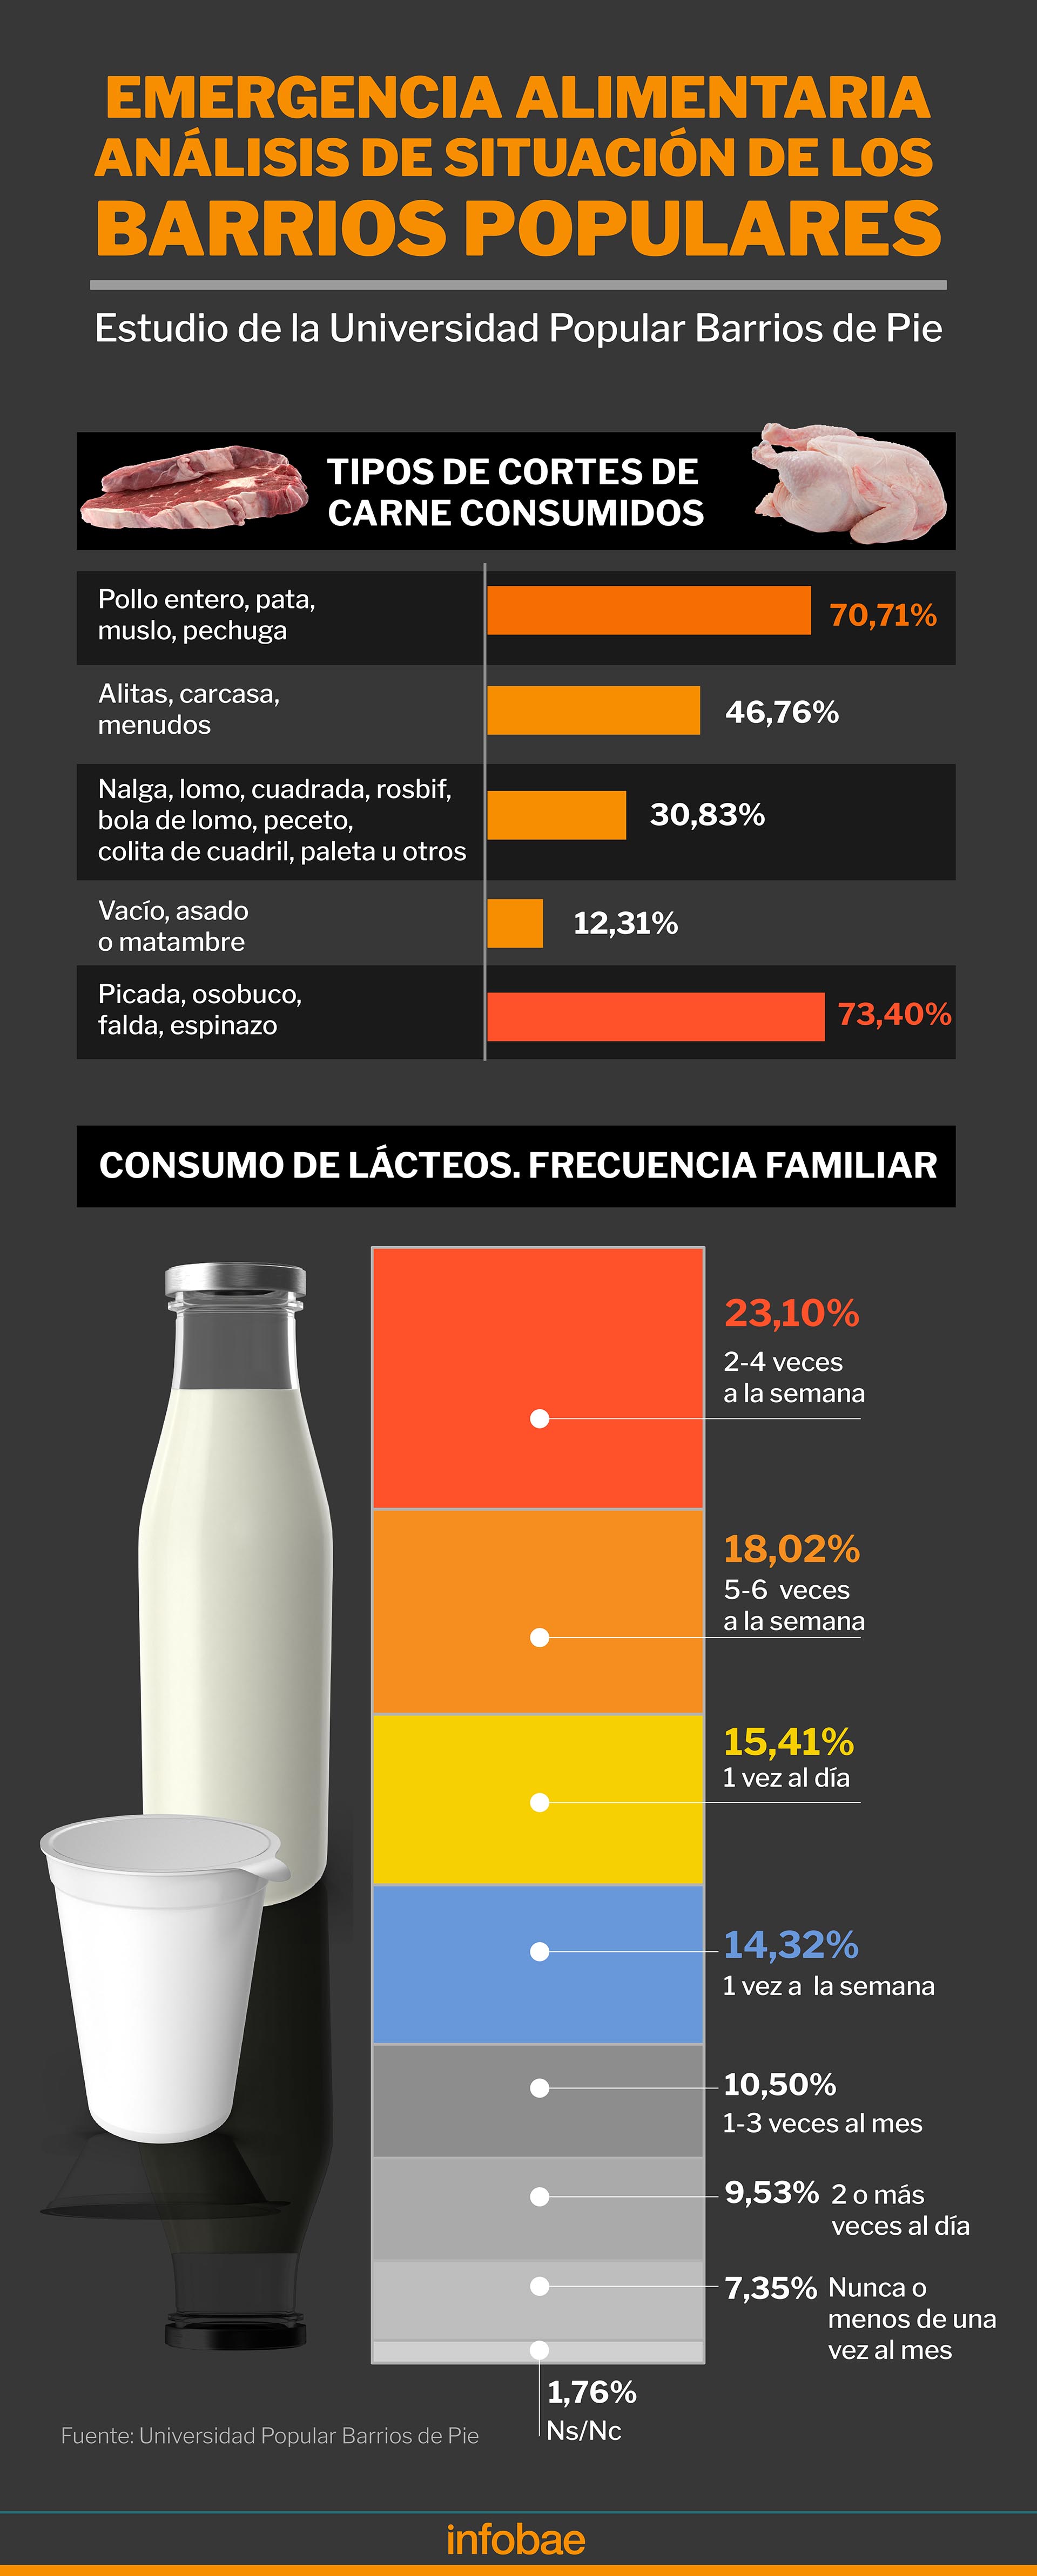 El análisis del consumo de carnes y lácteos